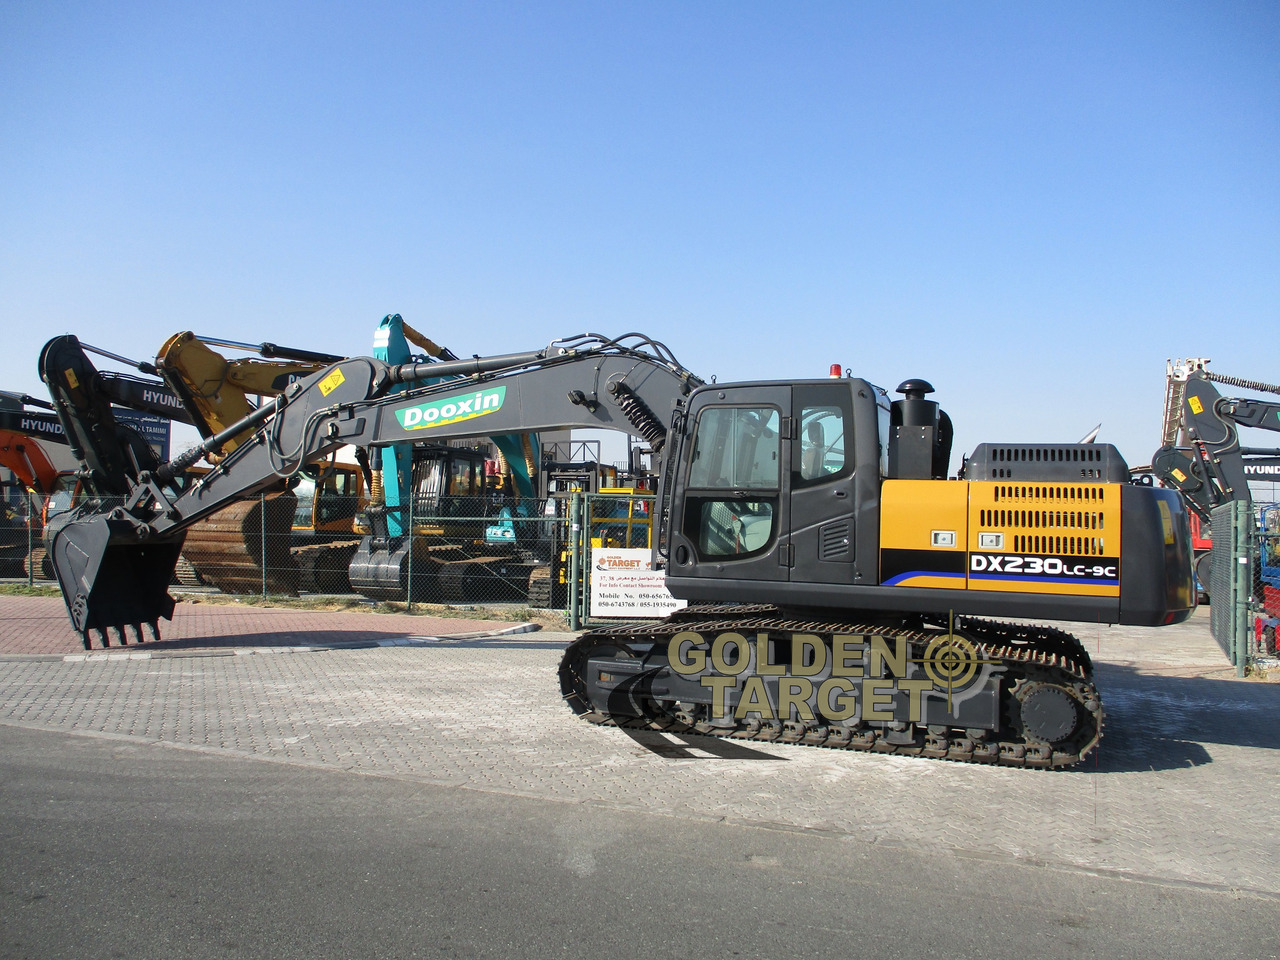 Новый Экскаватор Dooxin DX230PC-9 Hydraulic Excavator: фото 6